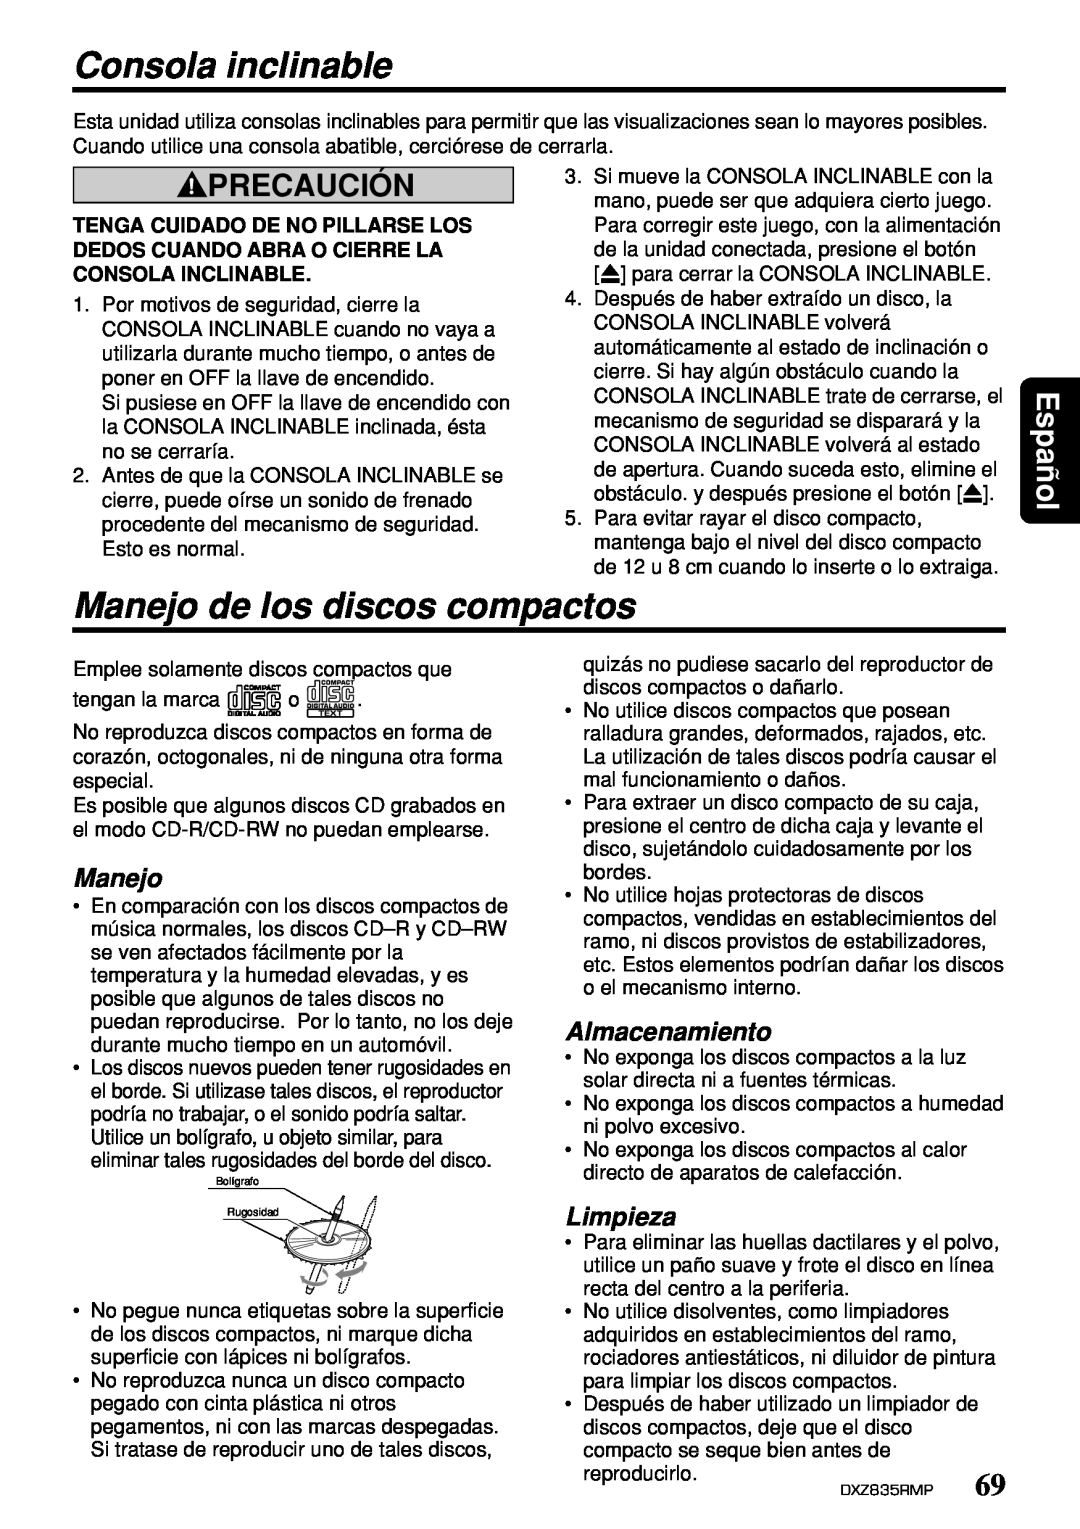 Clarion DXZ835MP Consola inclinable, Manejo de los discos compactos, Almacenamiento, Limpieza, Precaución, Español 